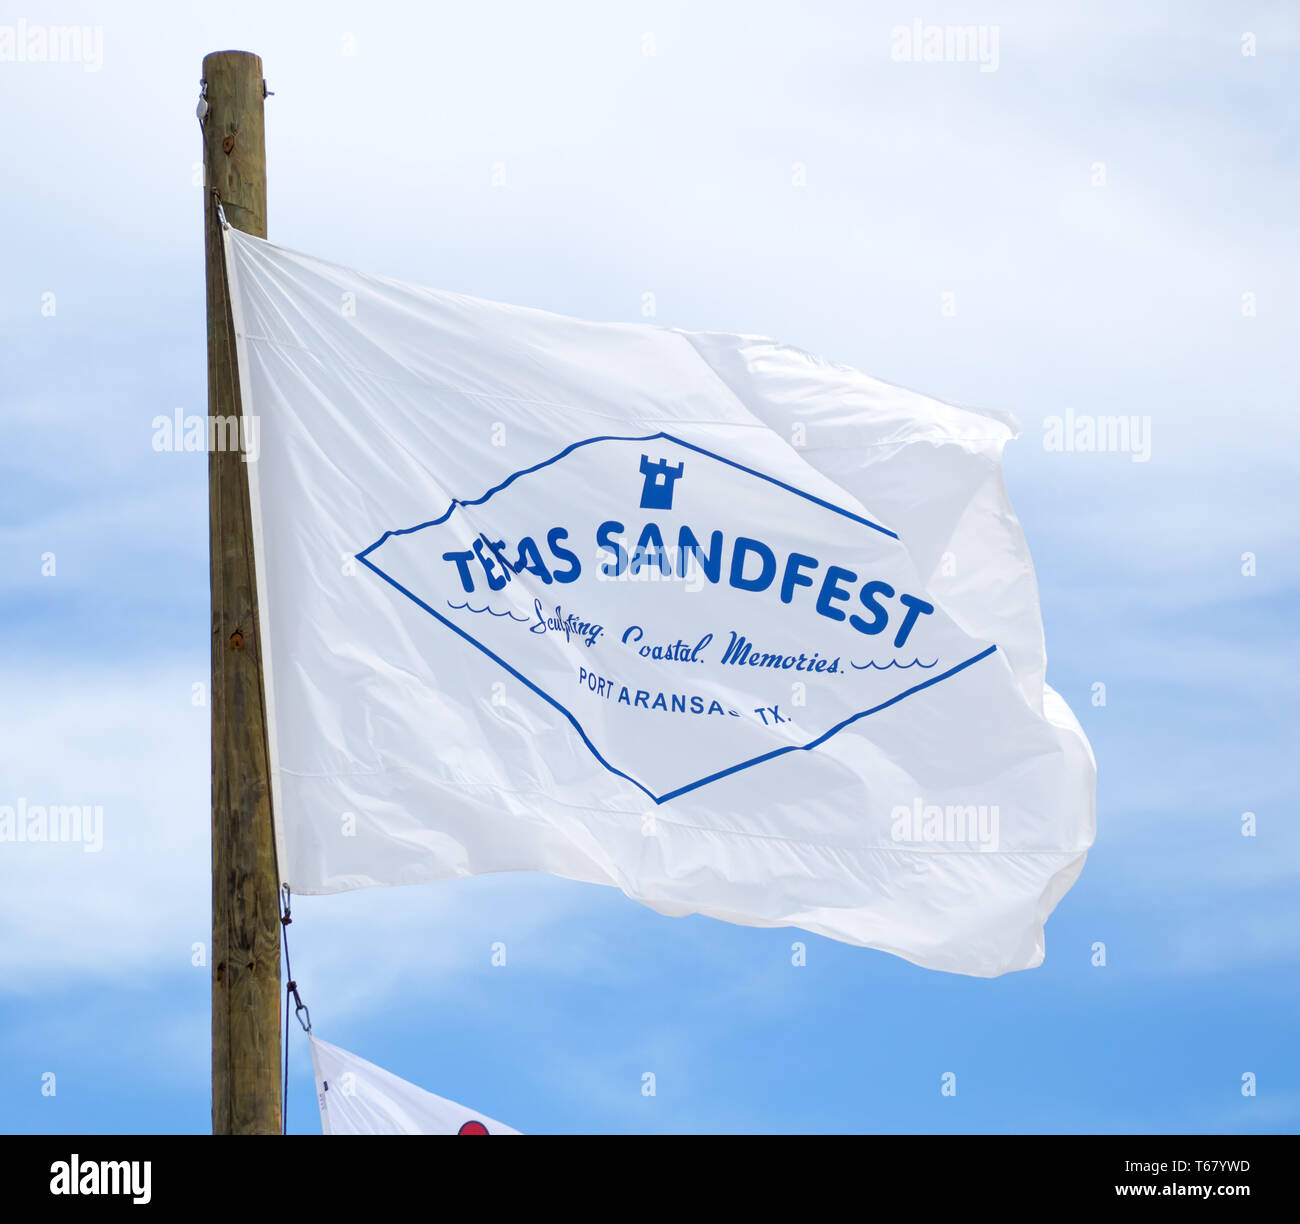 Le Texas Sandfest drapeau flotte contre un ciel bleu avec des nuages blancs au Texas 2019 Sandfest à Port Aransas, Texas USA. Banque D'Images